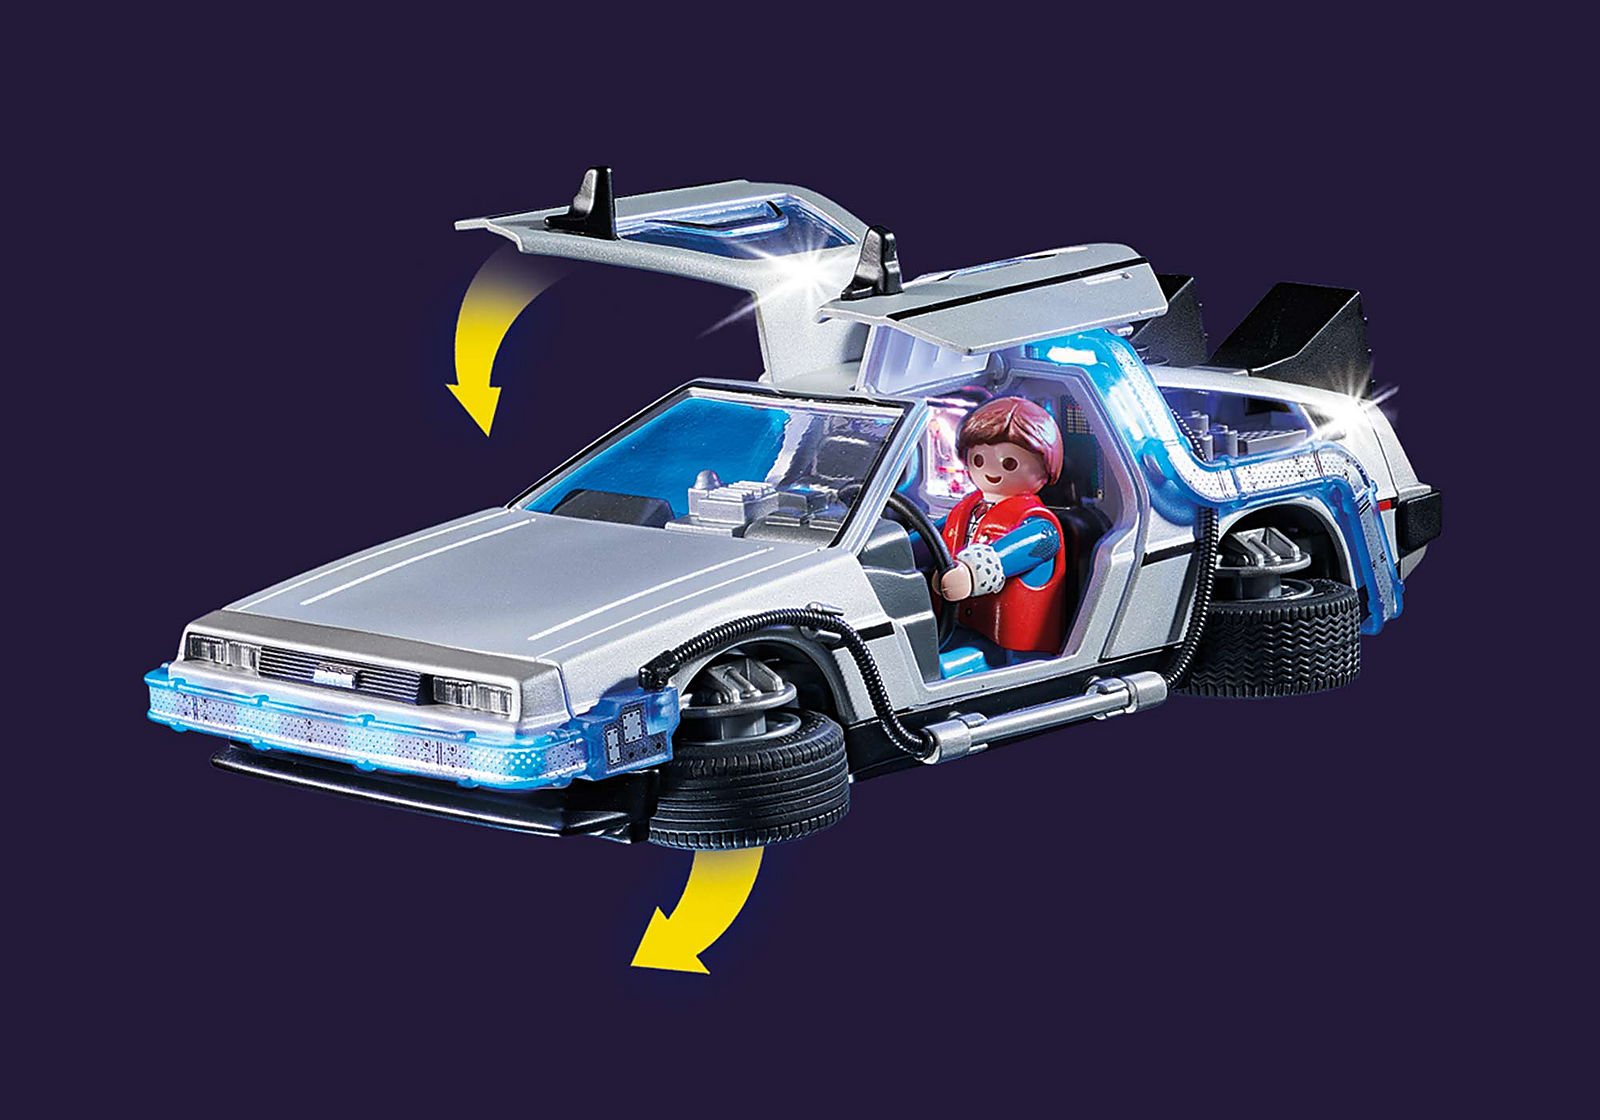  Aumenta tu colección de ‘Volver al futuro’ con este set de Playmobil